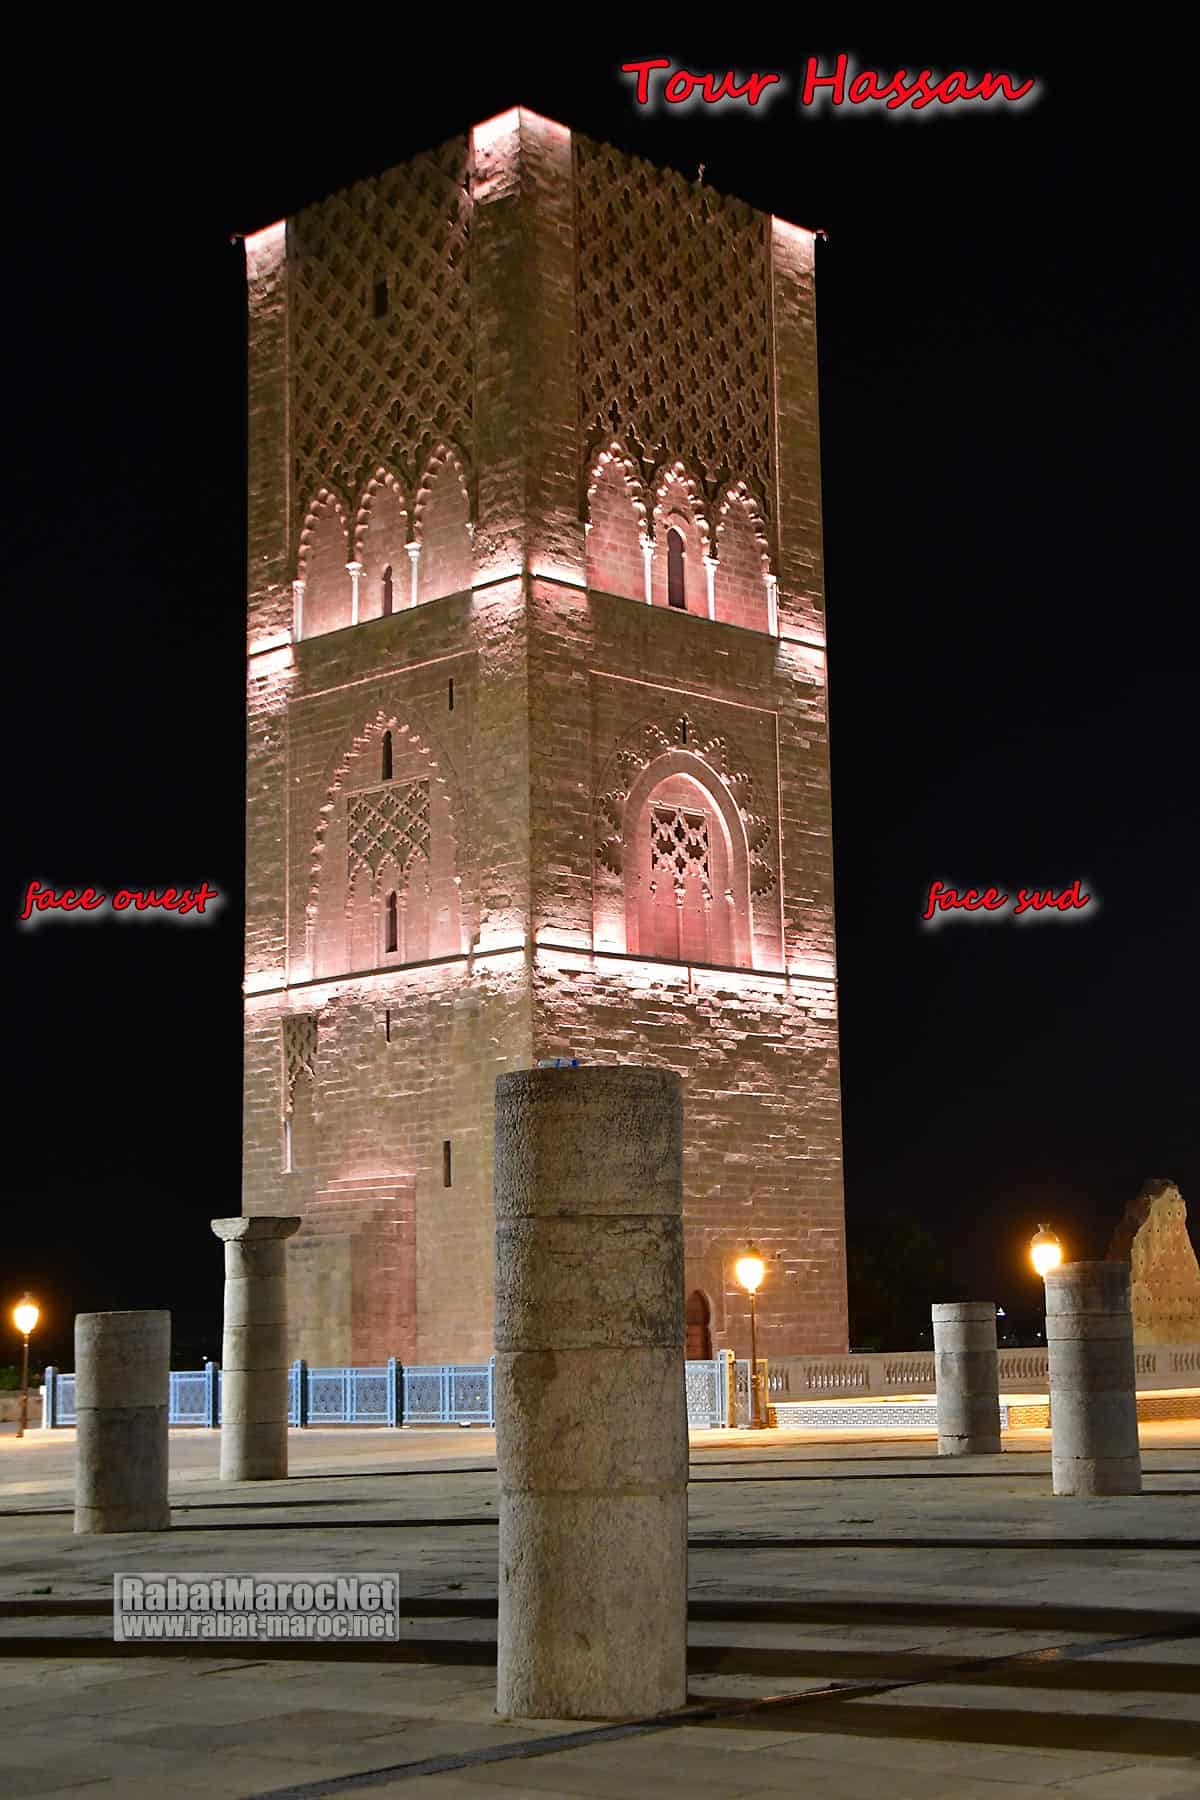 Faces ouest et sud de la tour hassan dans son nouvel éclairage par LED